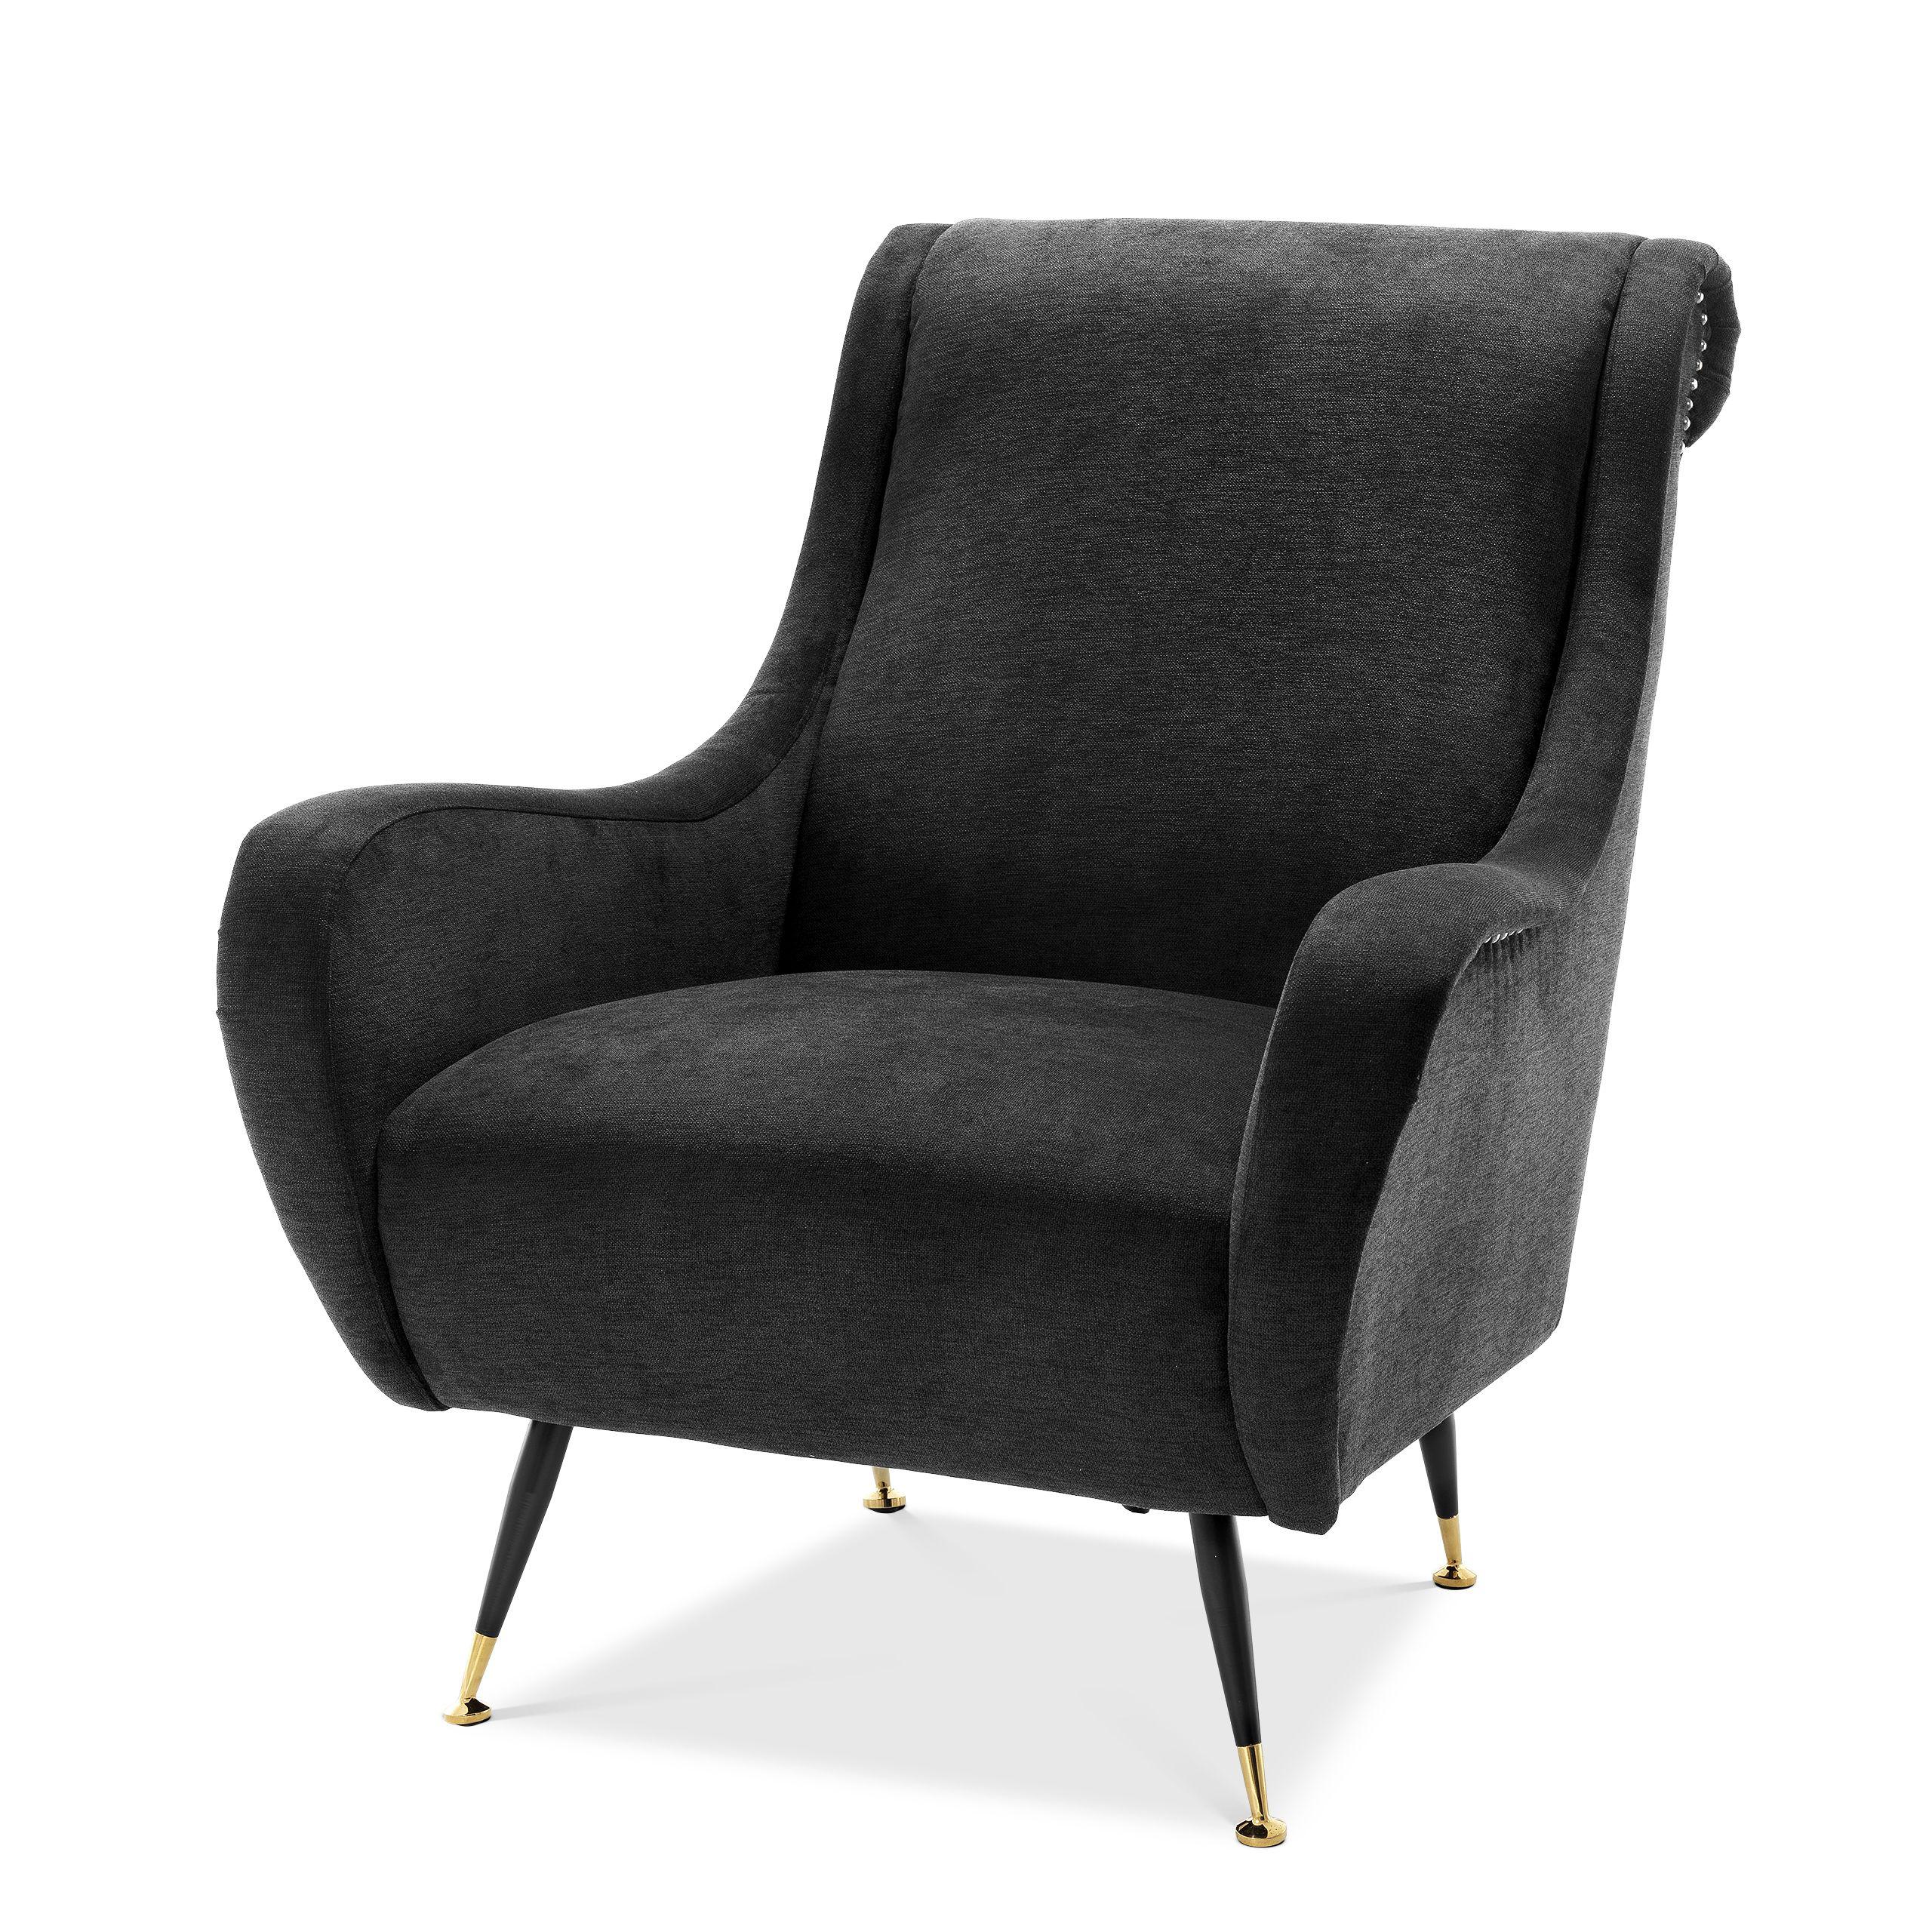 Купить Кресло Chair Giardino в интернет-магазине roooms.ru